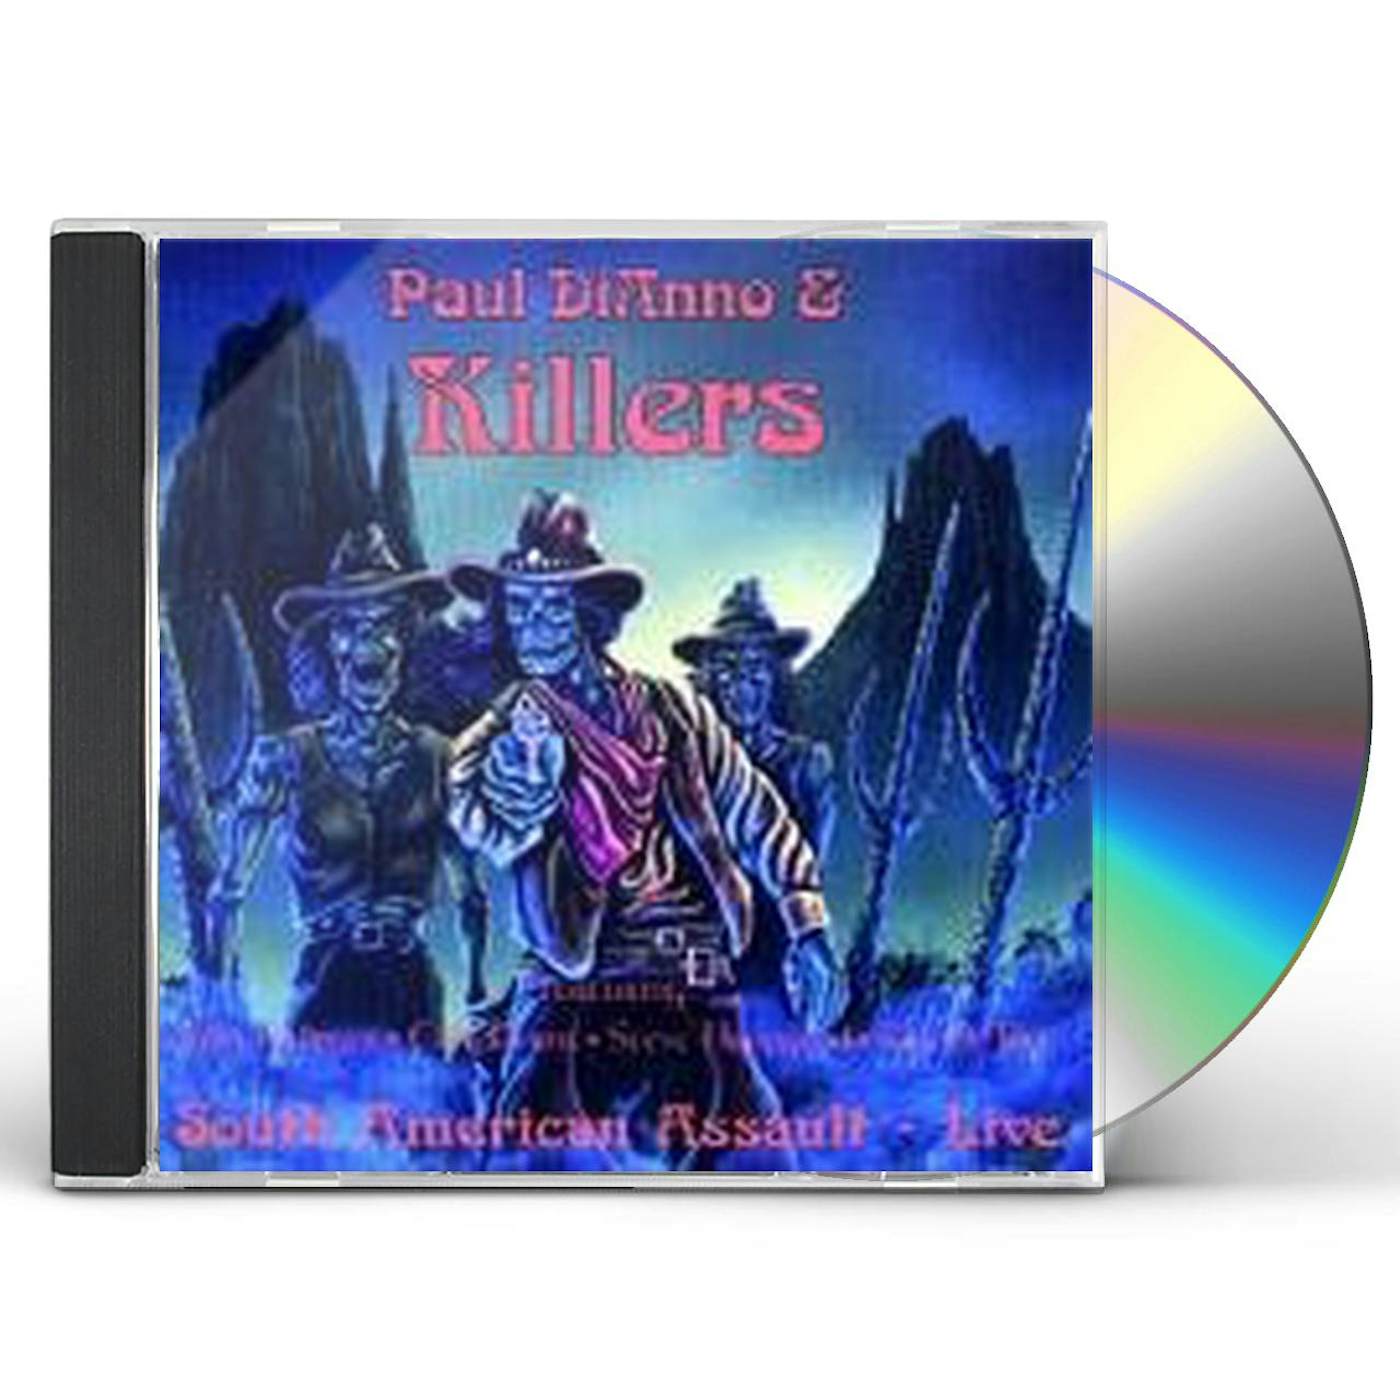 PAUL DI'ANNO & KILLERS CD